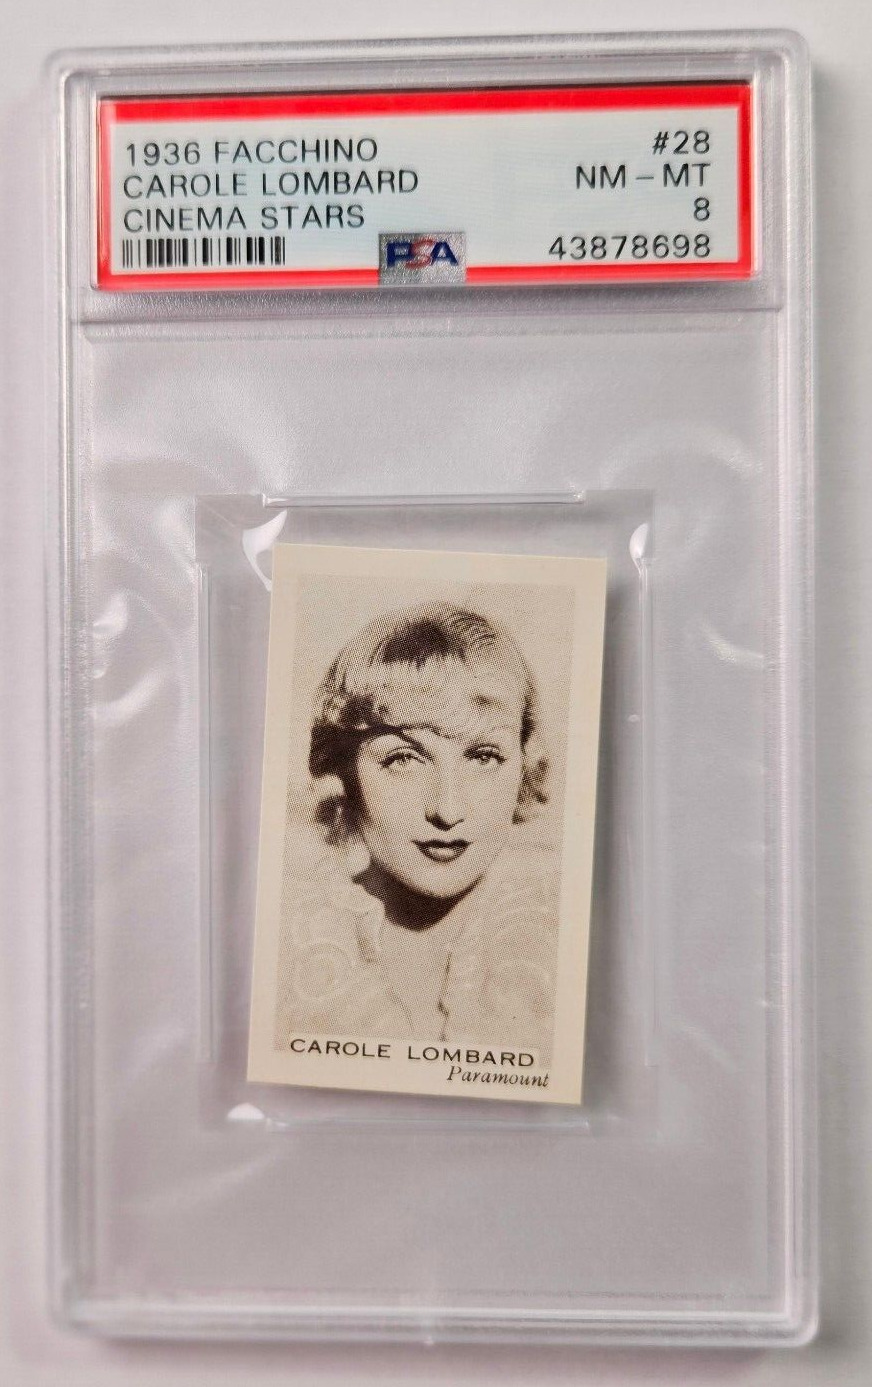 1936 Facchino Cinema Stars #28 CAROLE LOMBARD PSA 8 NM-MT